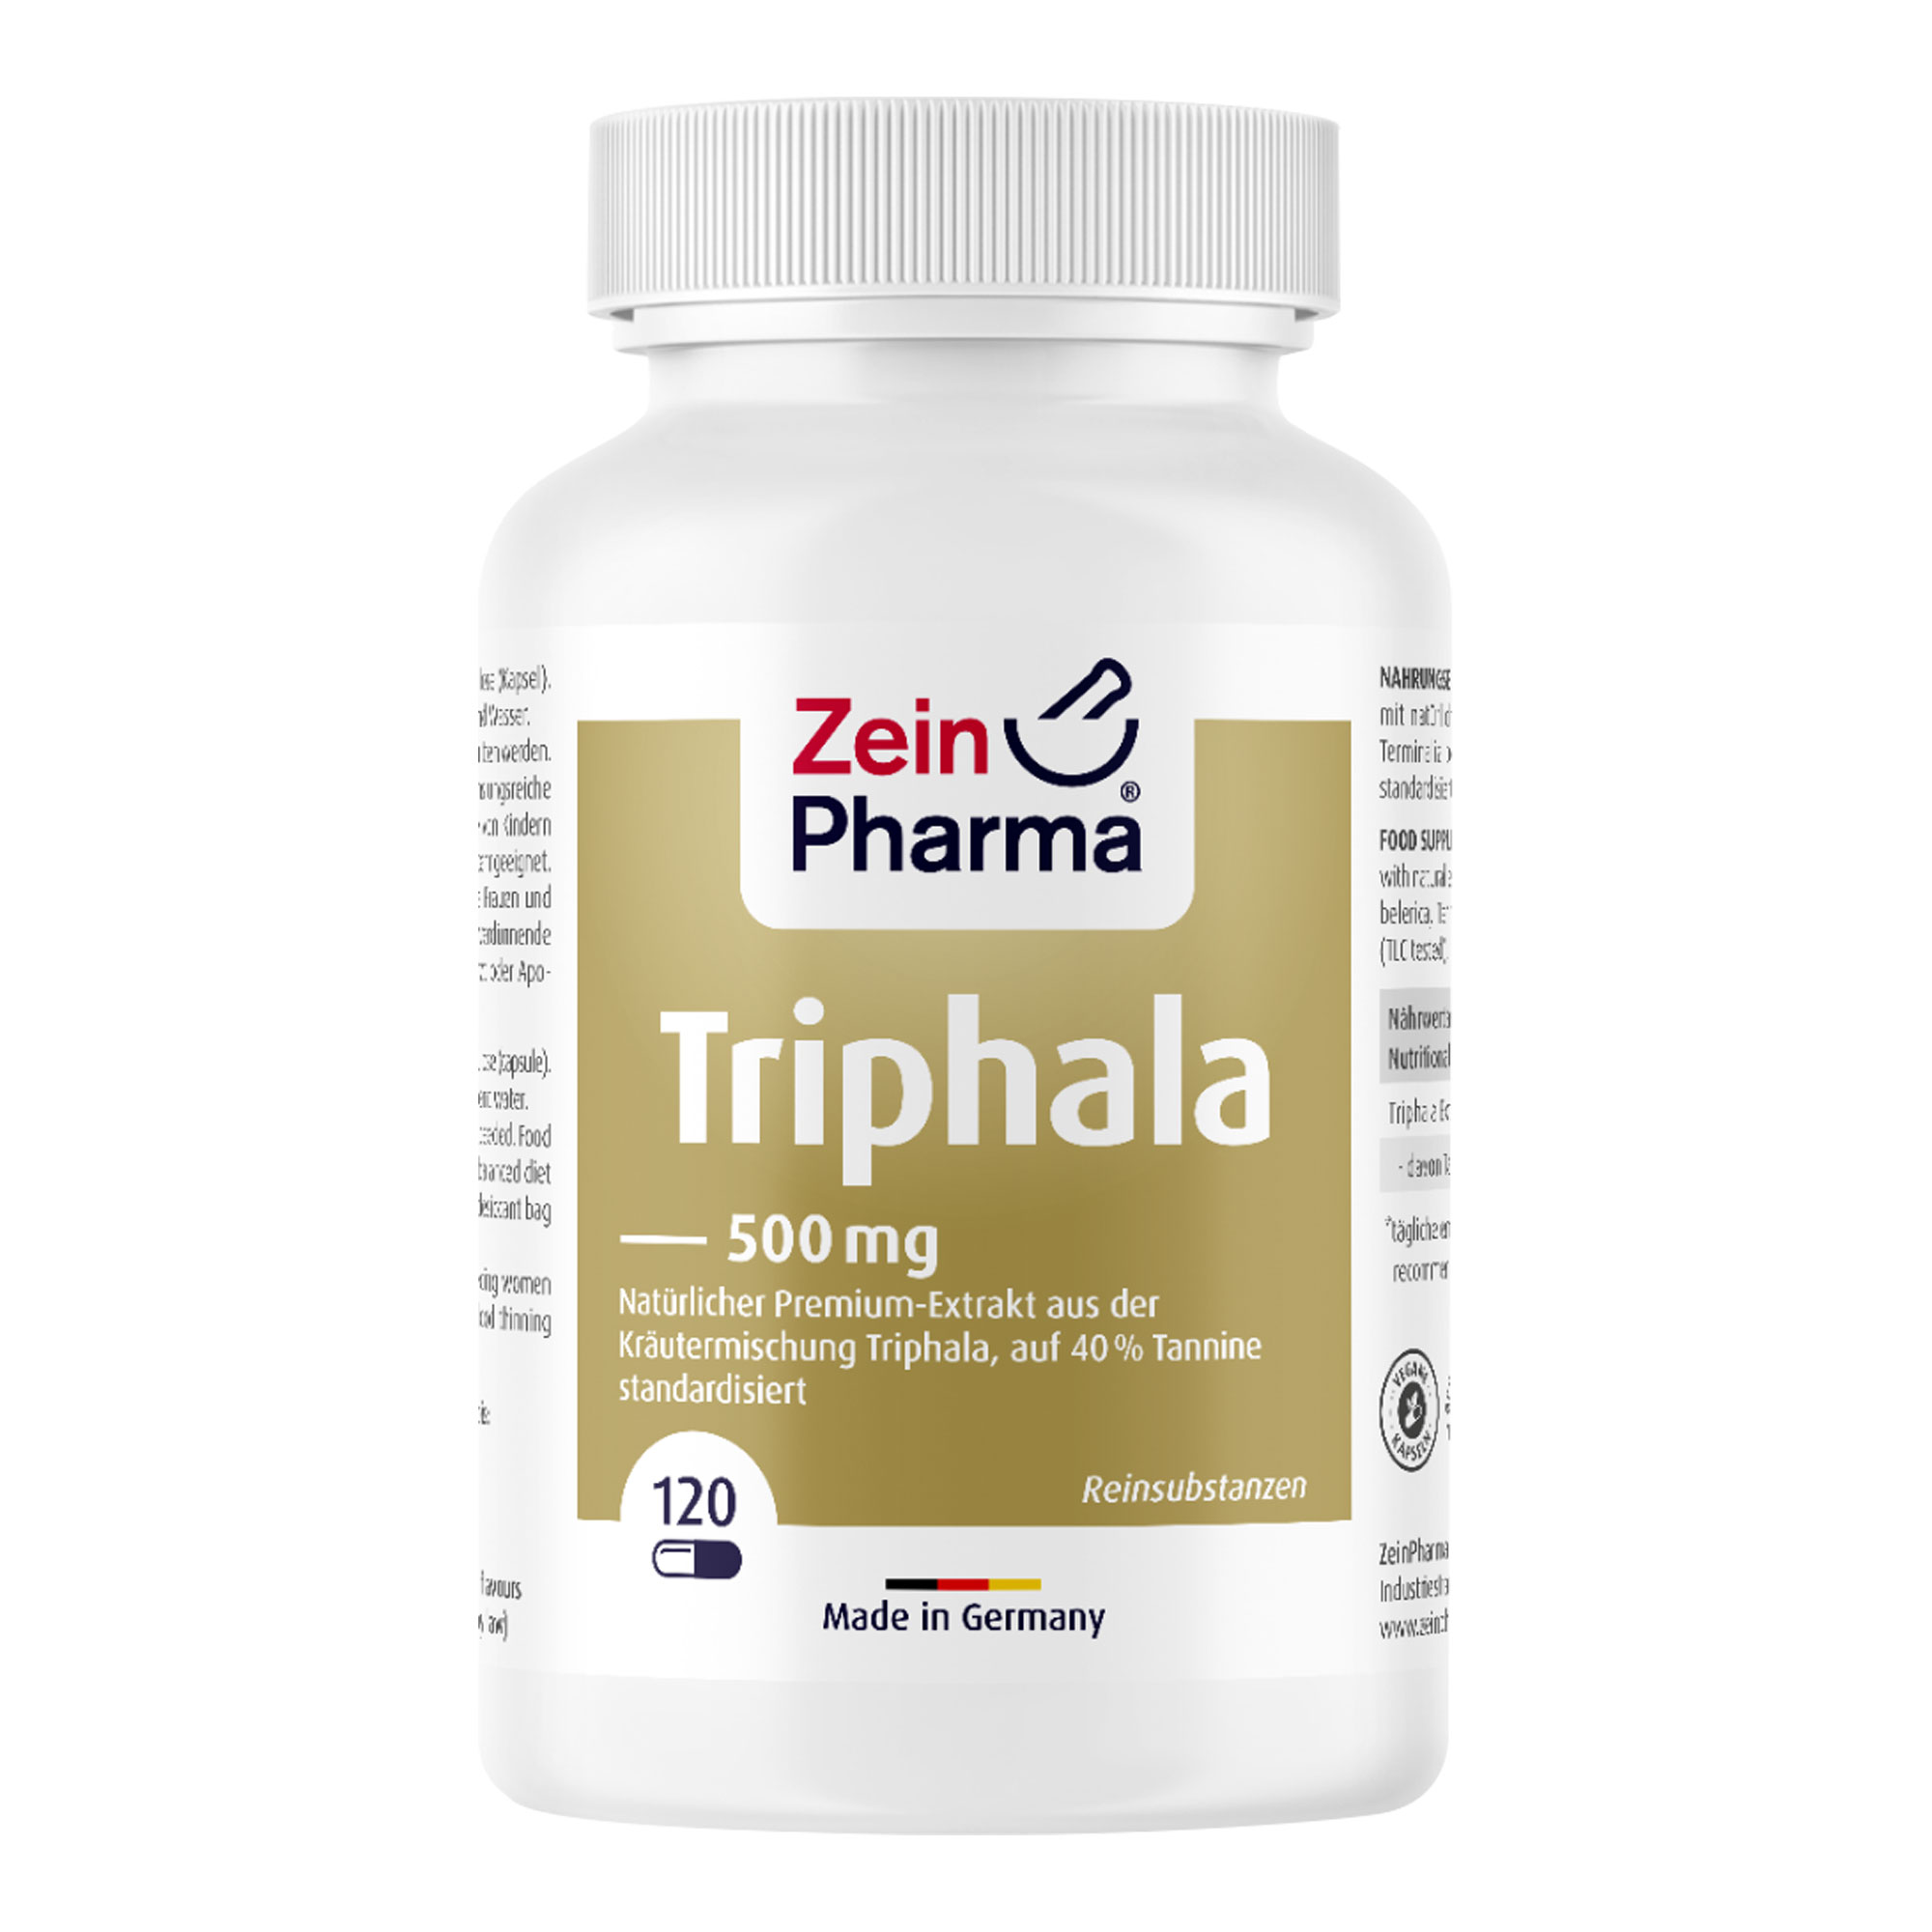 Nahrungsergänzungsmittel mit natürlichem Extrakt aus Triphala auf 40 % Tannine standardisiert (TLC-geprüft).